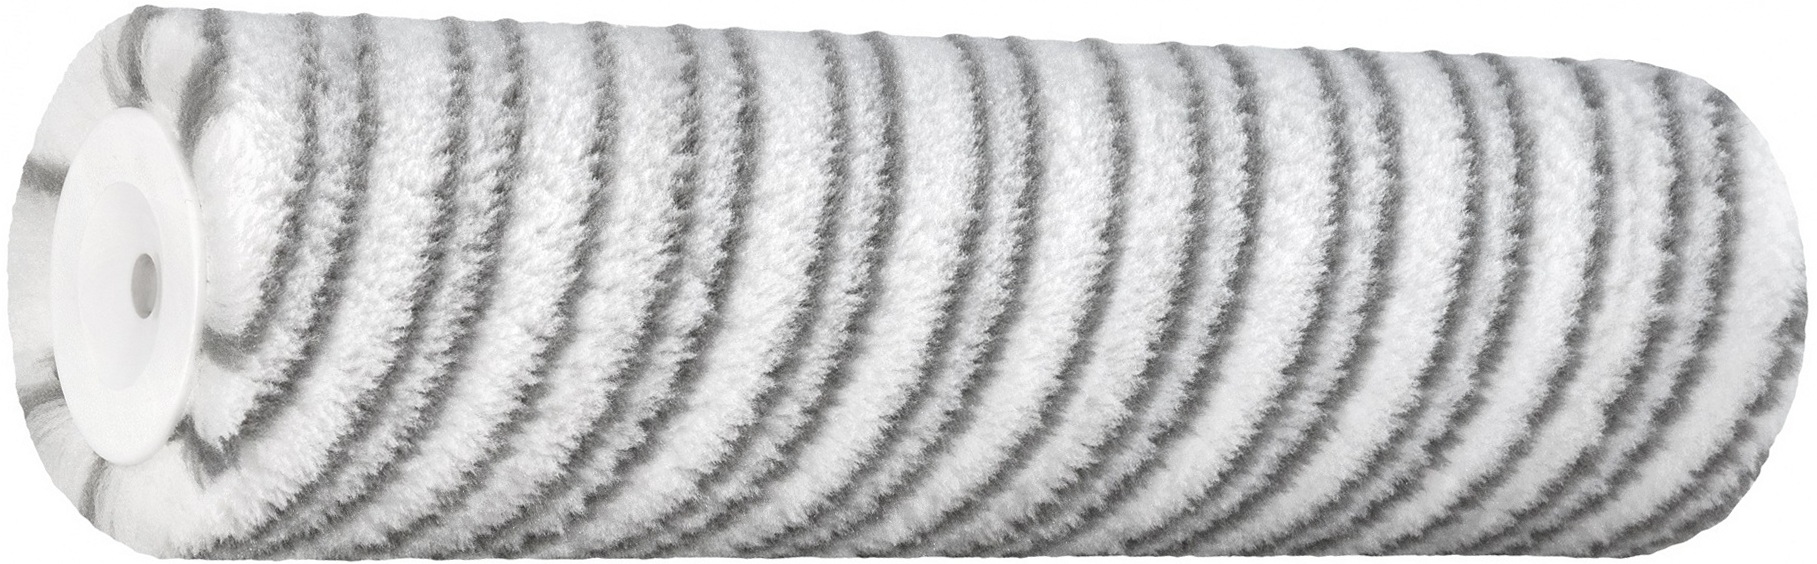 Váleček Color Expert Silver Stripe 250×48×18×8 mm